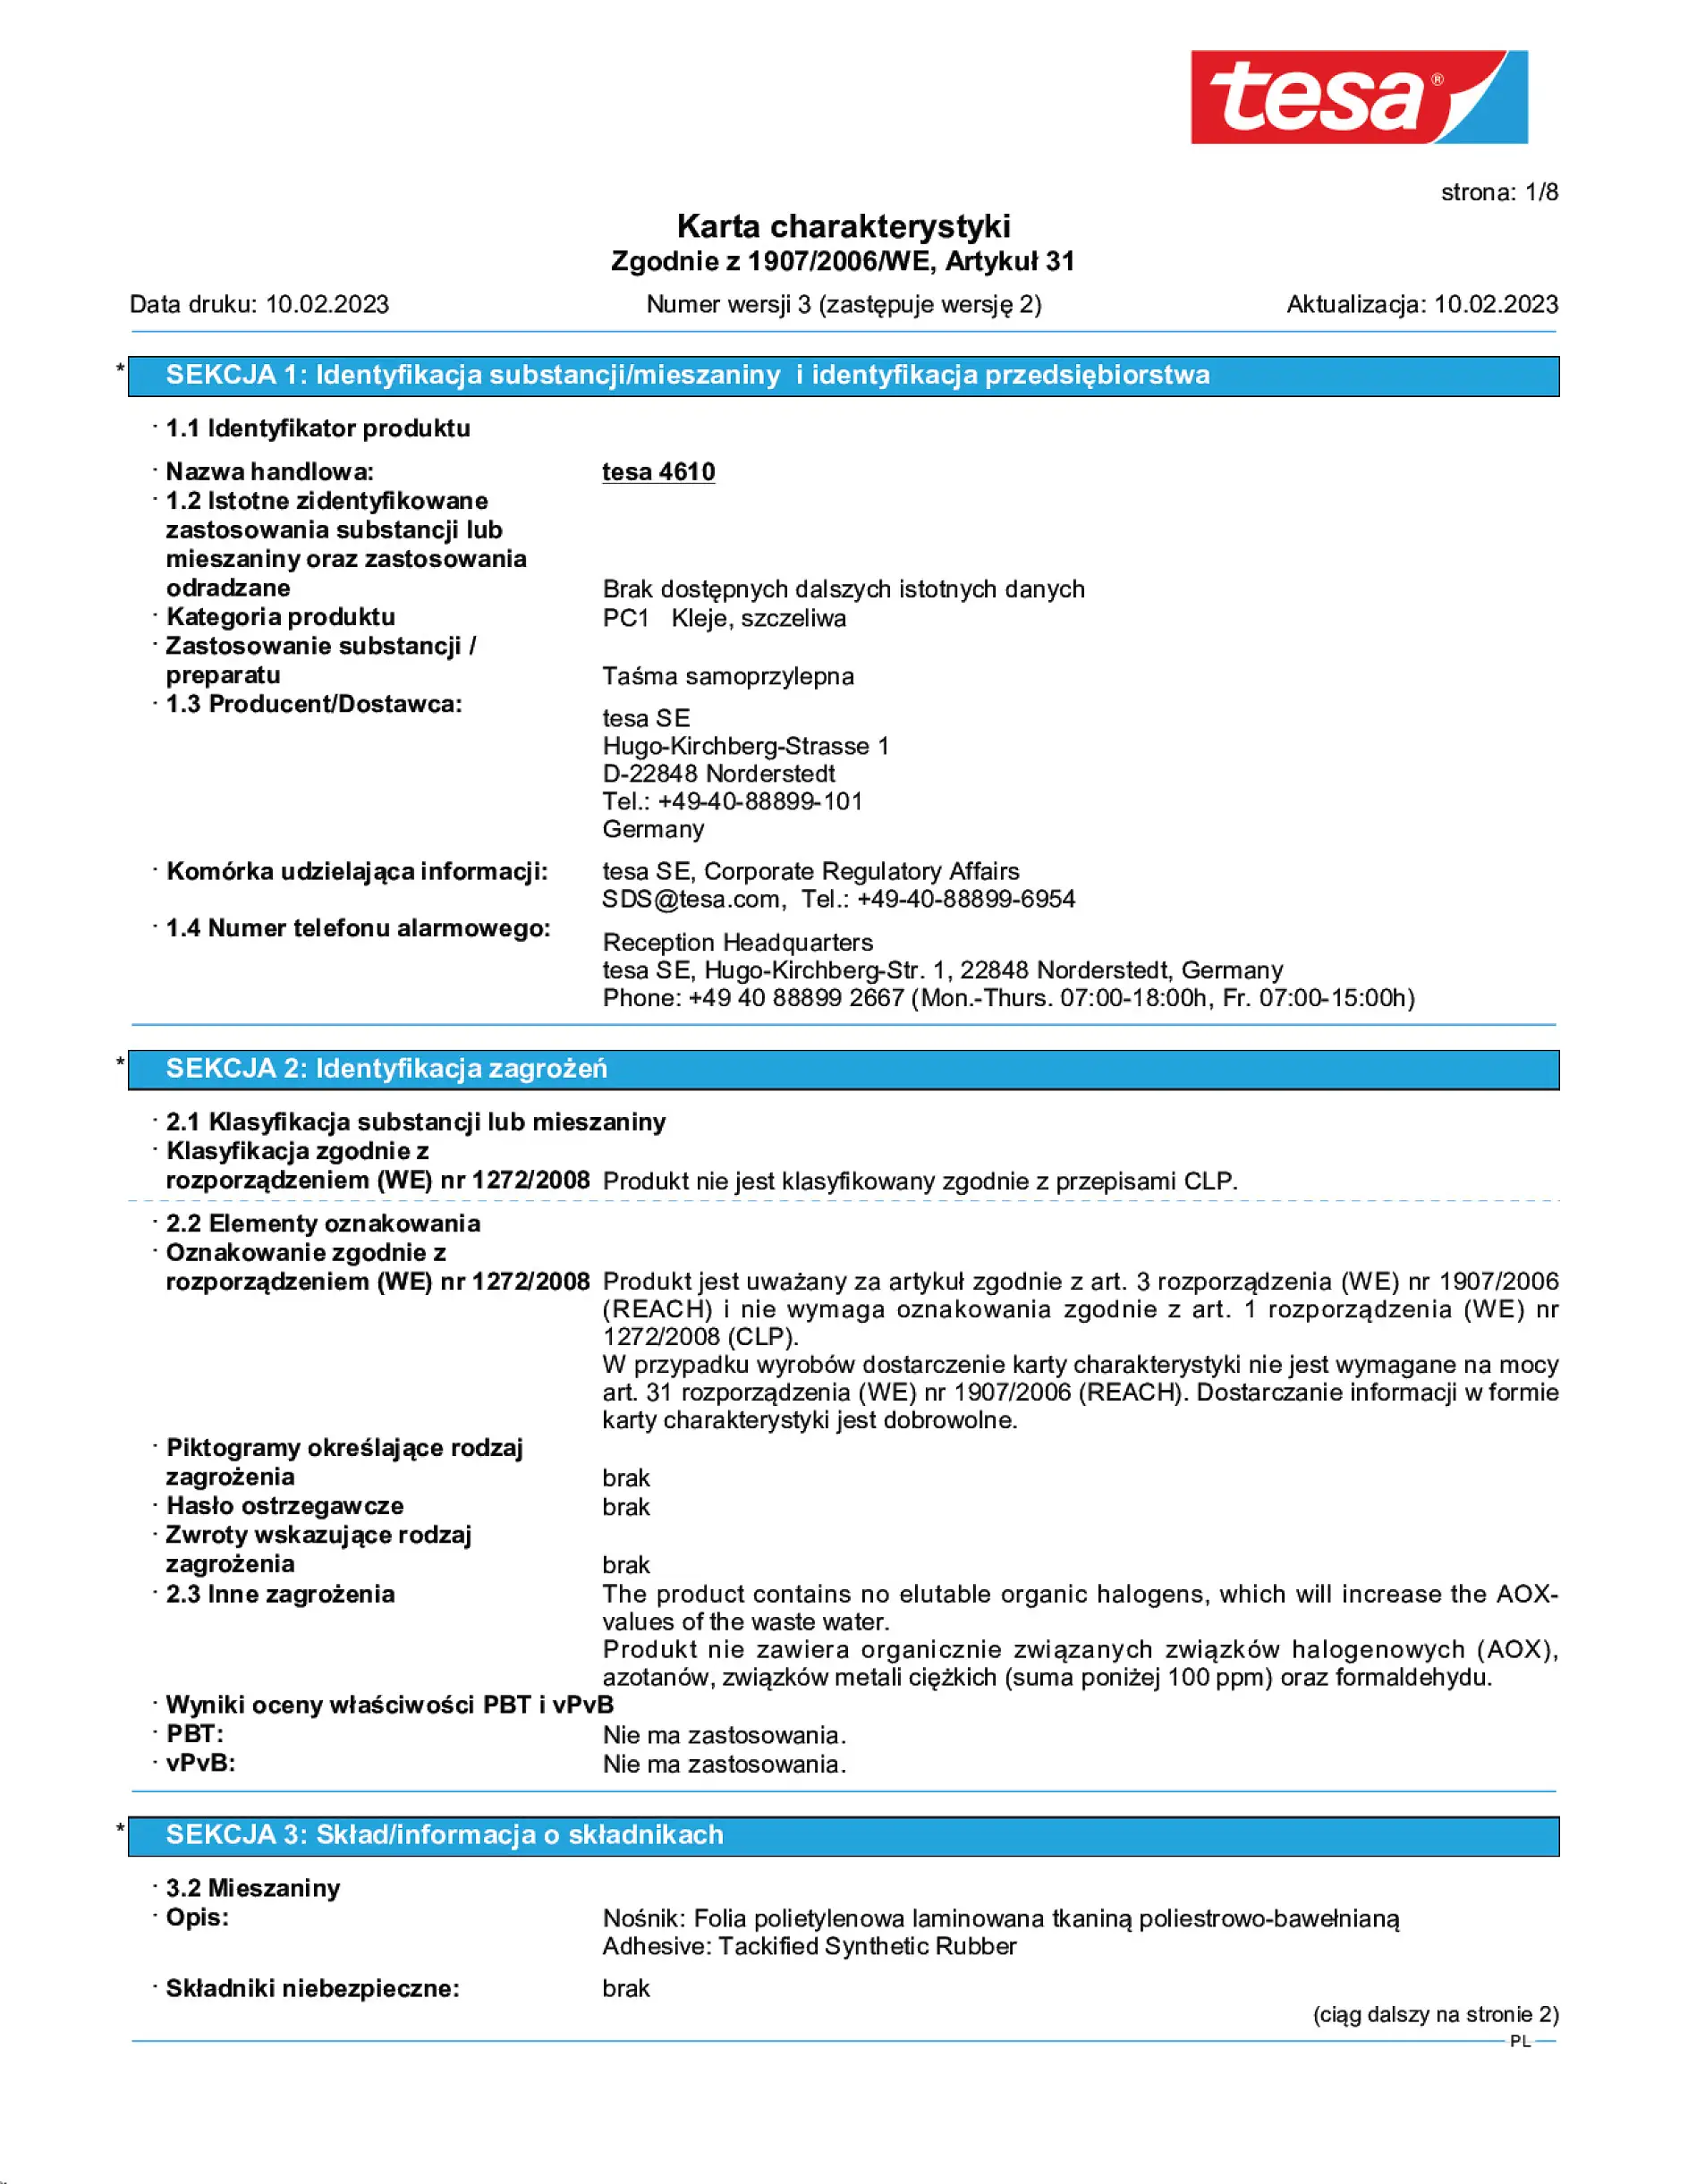 Safety data sheet_tesa® 04610_pl-PL_v3